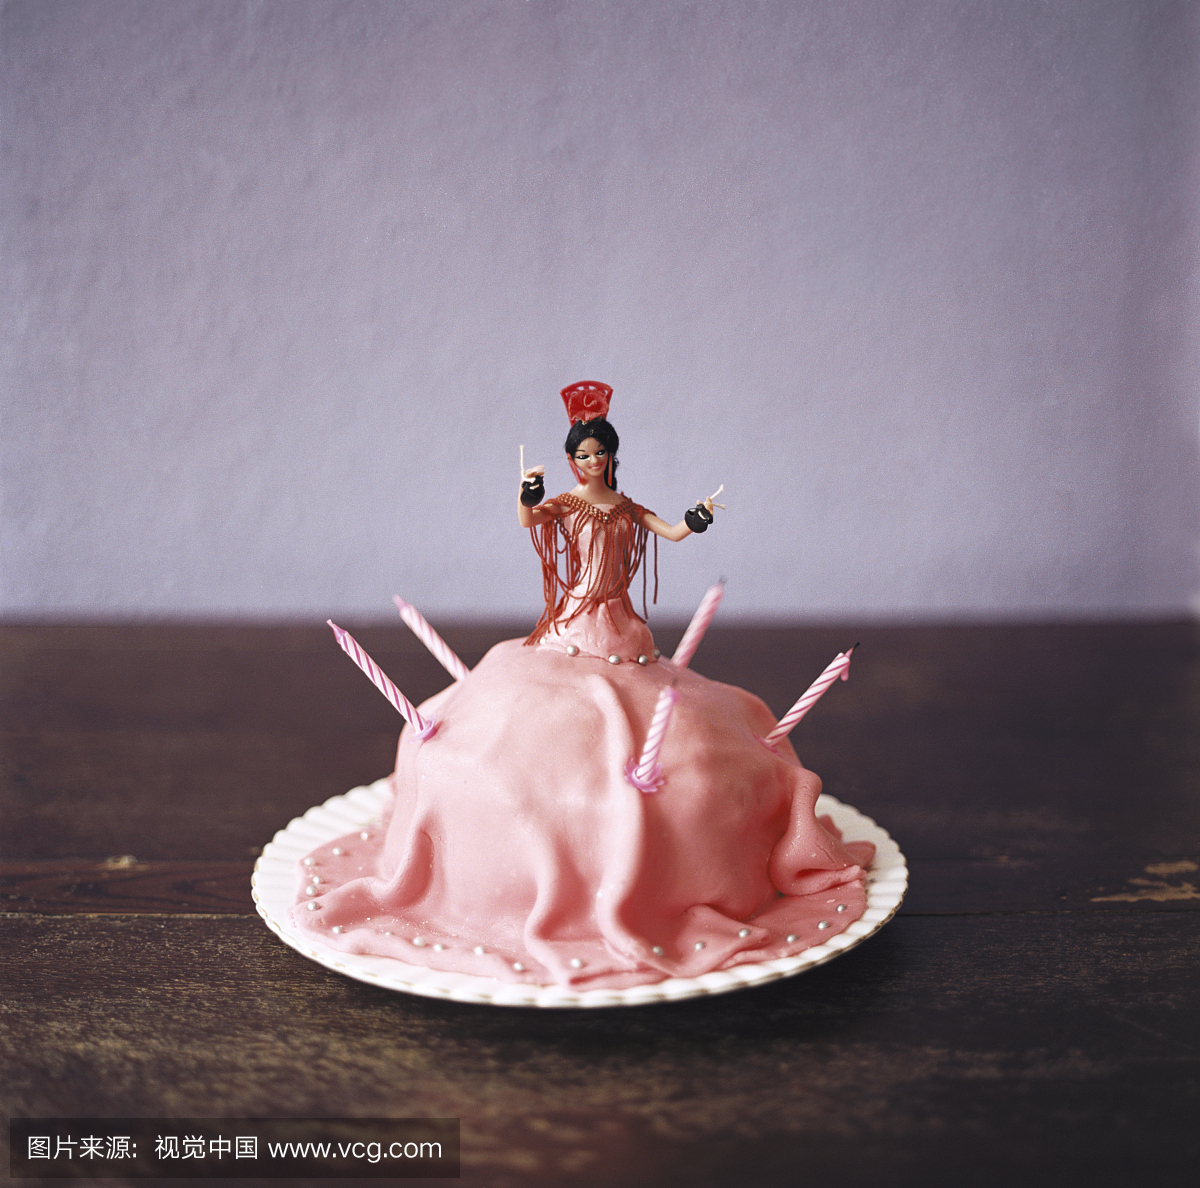 粉红色的蛋糕形状像弗拉门戈舞蹈员在桌子上,